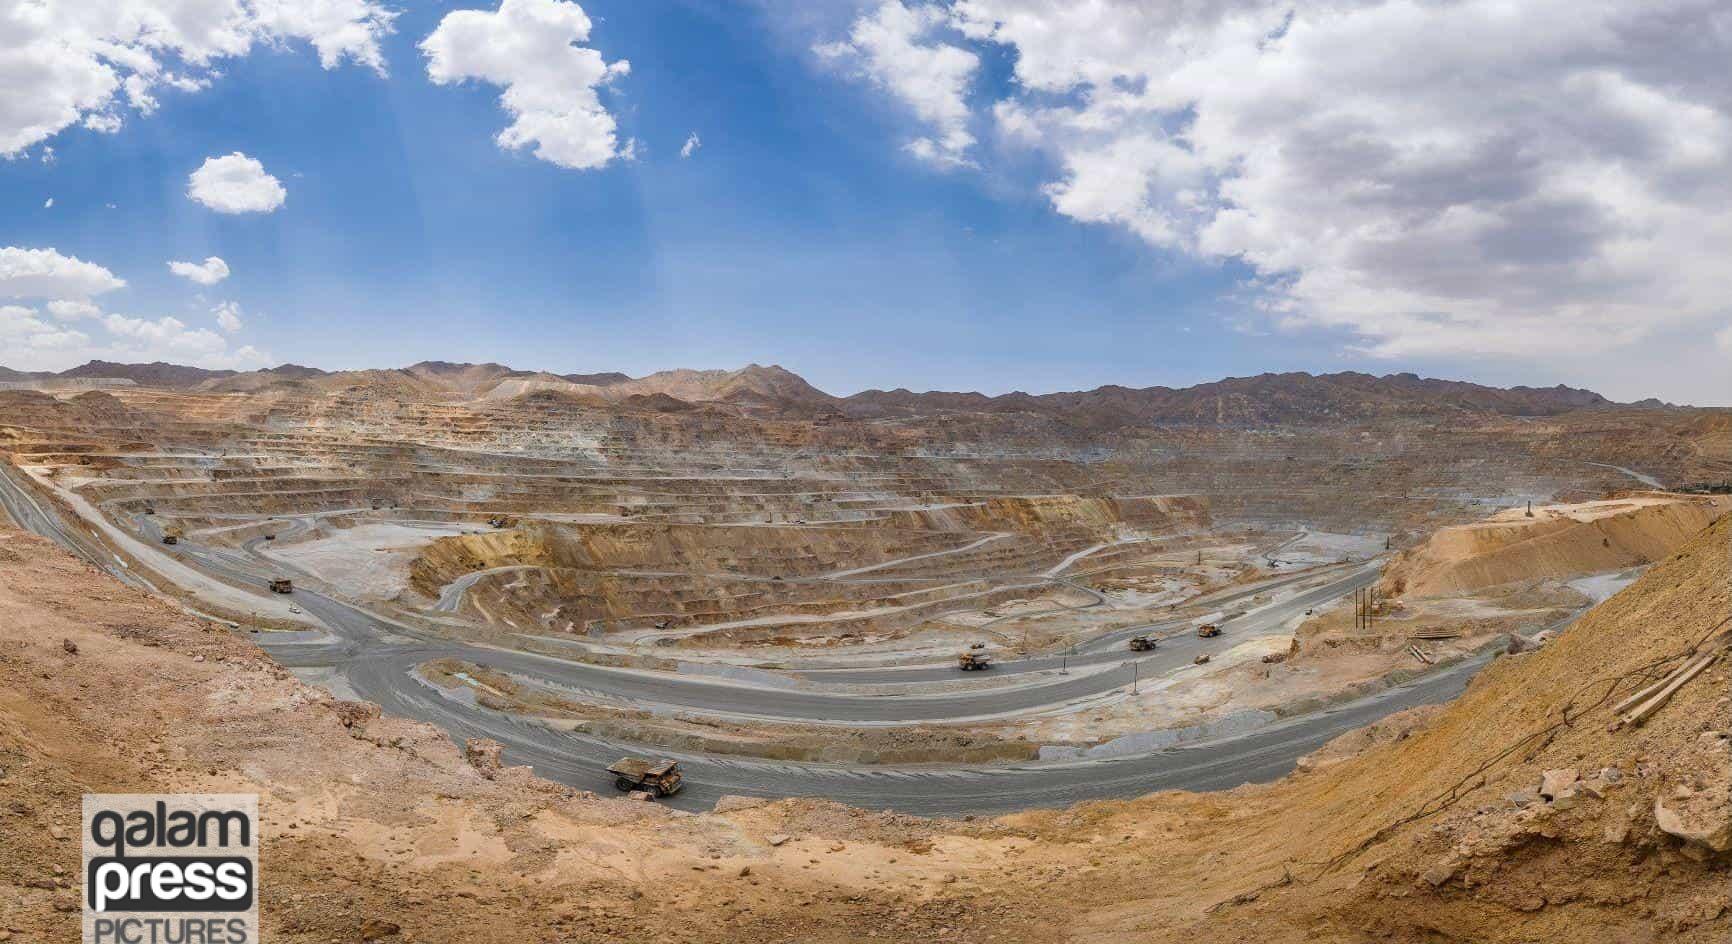 ۳۰۰ معدن غیرفعال در آذربایجان شرقی/ ارزش افزوده بخش مس ظرفیت بی نظیری دارد